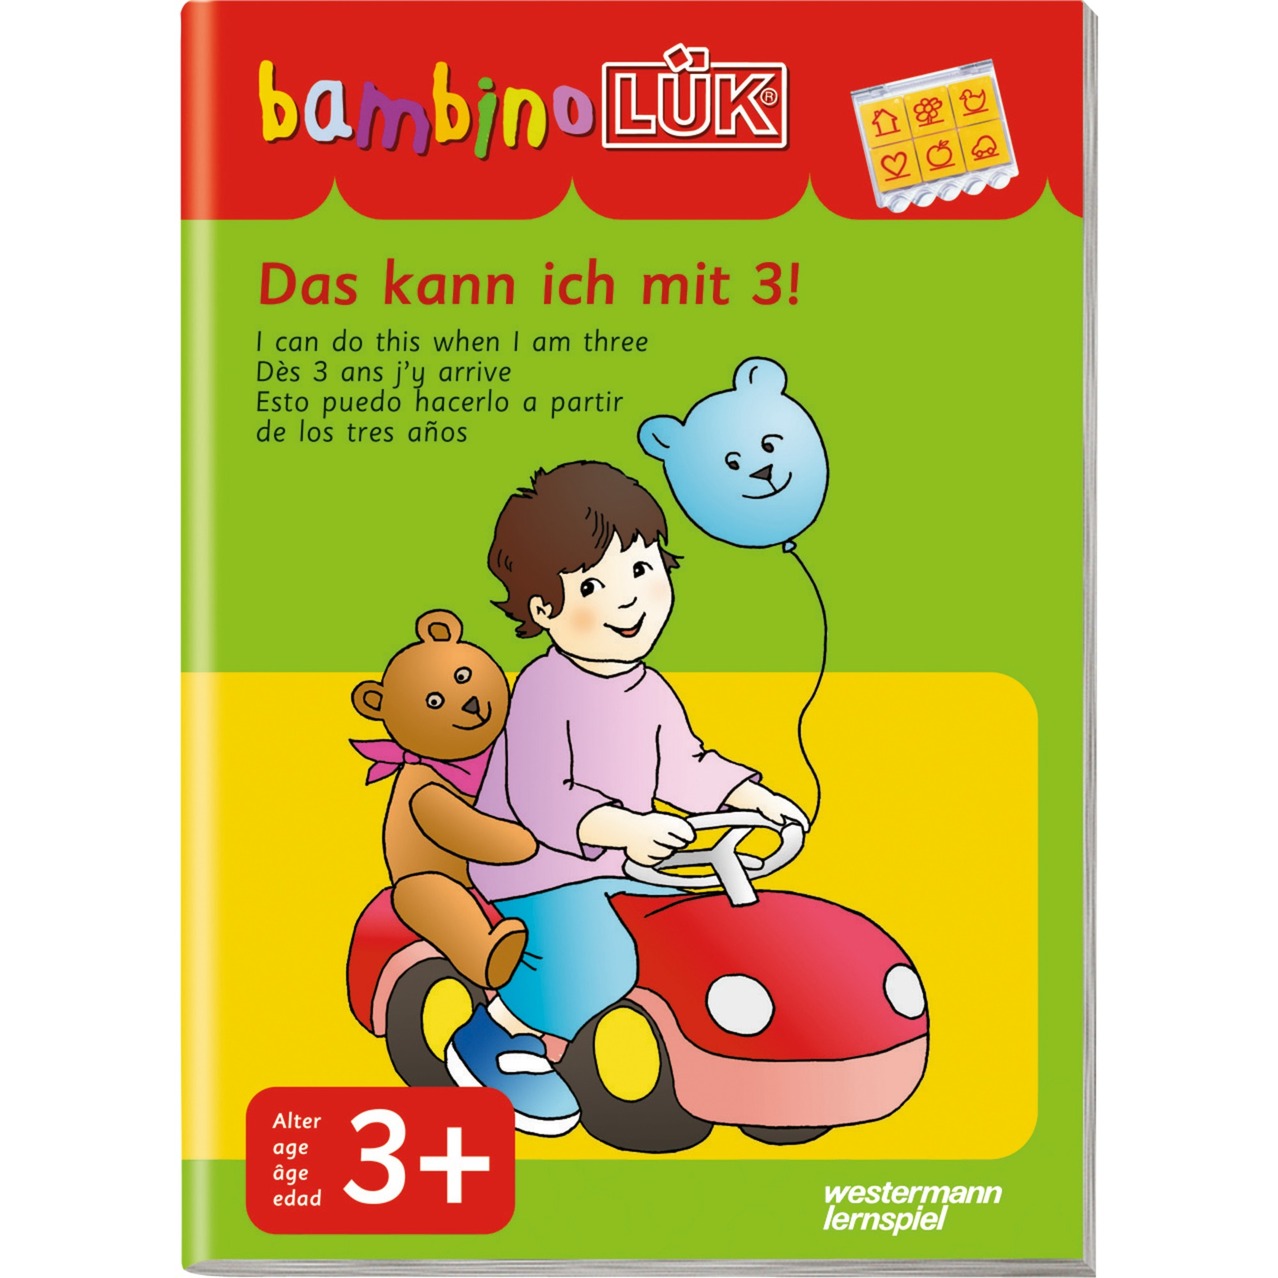 Das kann ich mit 3! książka dla dzieci, Książki edukacyjne